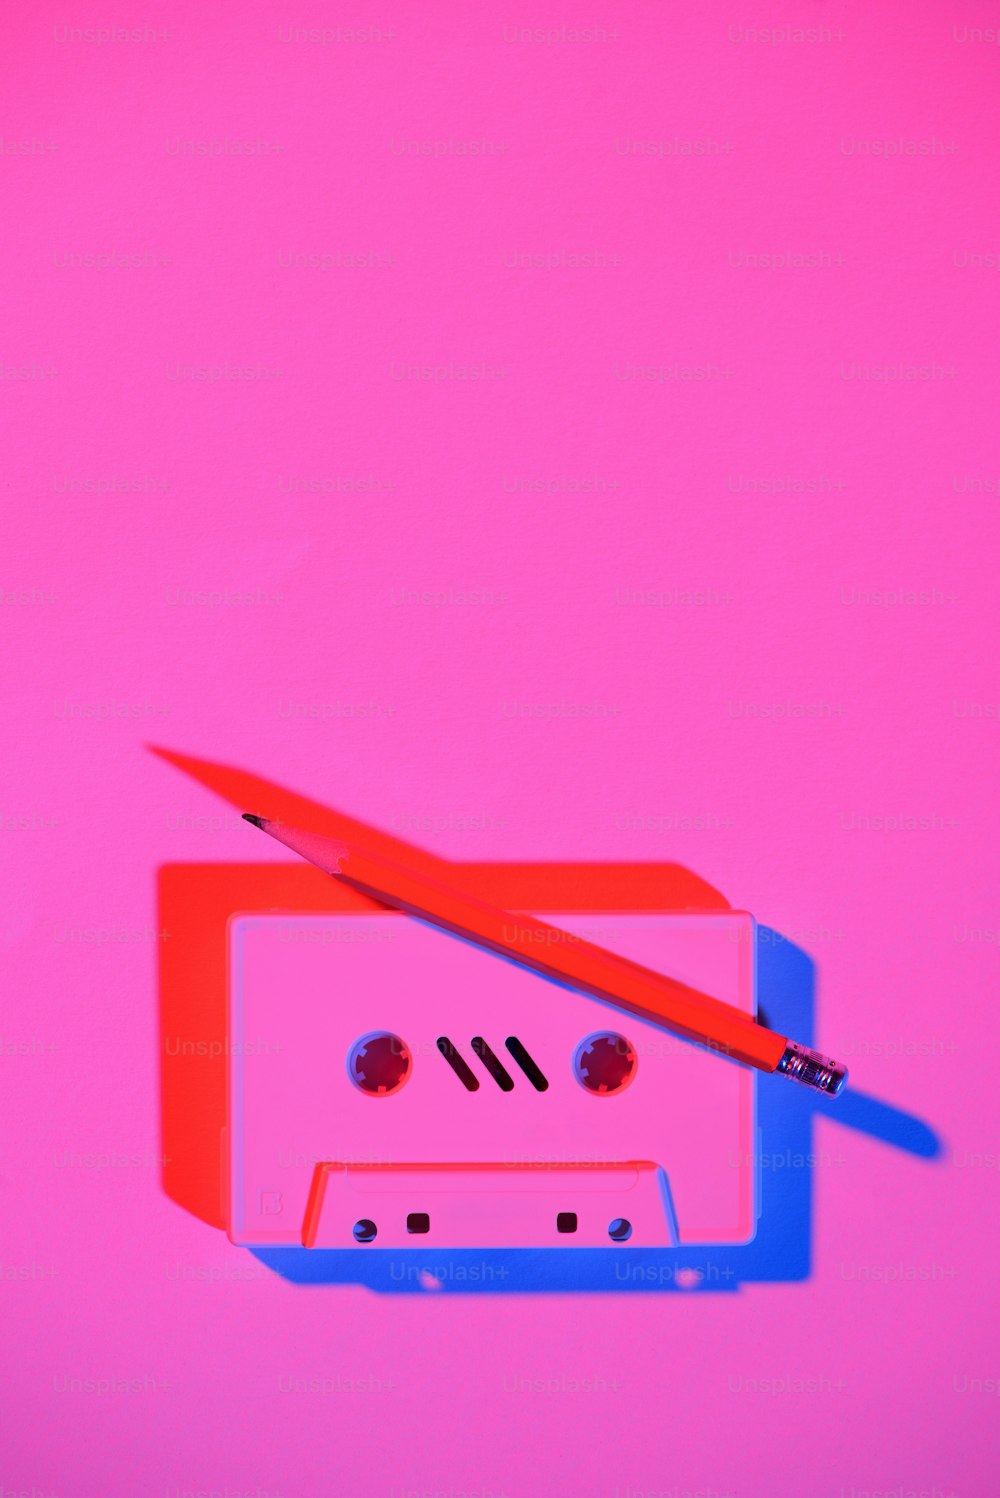 Imagen rosa tonificada de casete de audio retro y lápiz sobre la mesa